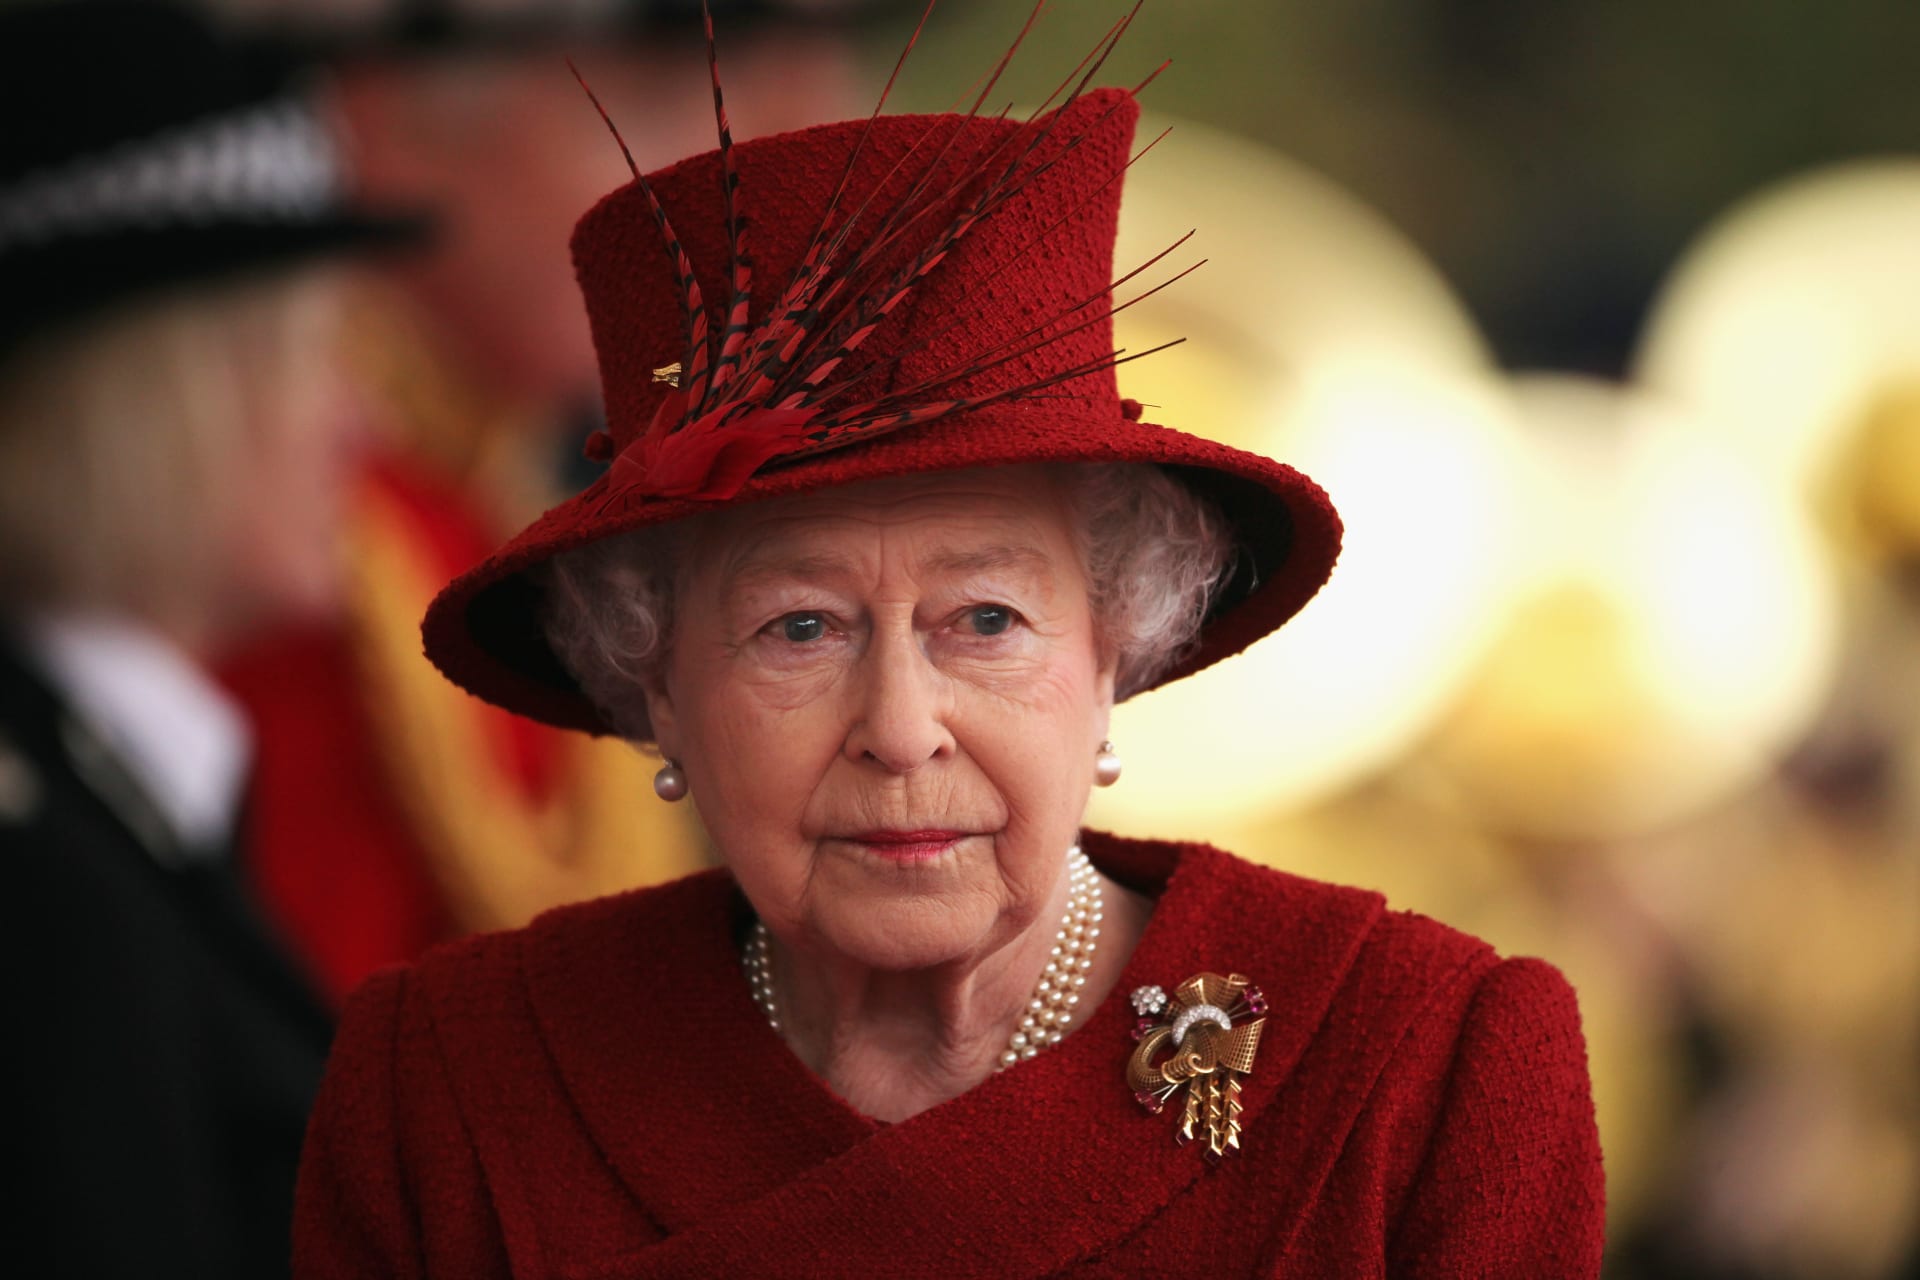 ملكة بريطانيا الراحلة إليزابيث الثانية